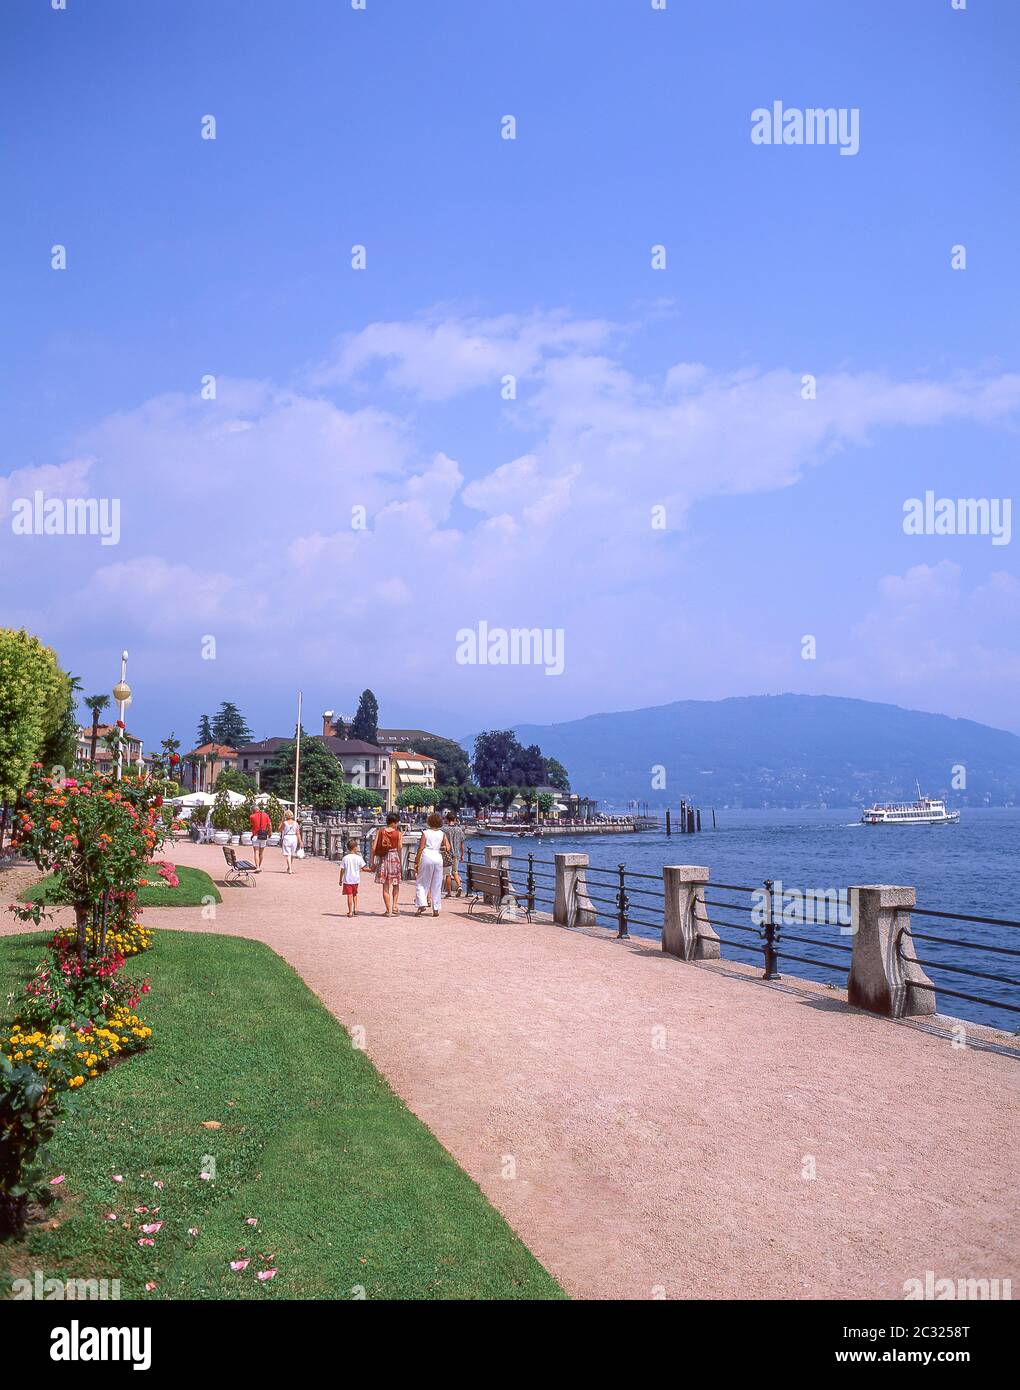 Lake Maggiore foreshore promenade, Baveno, Province of Verbano-Cusio-Ossola, Piemonte (Piedmont) Region, Italy Stock Photo